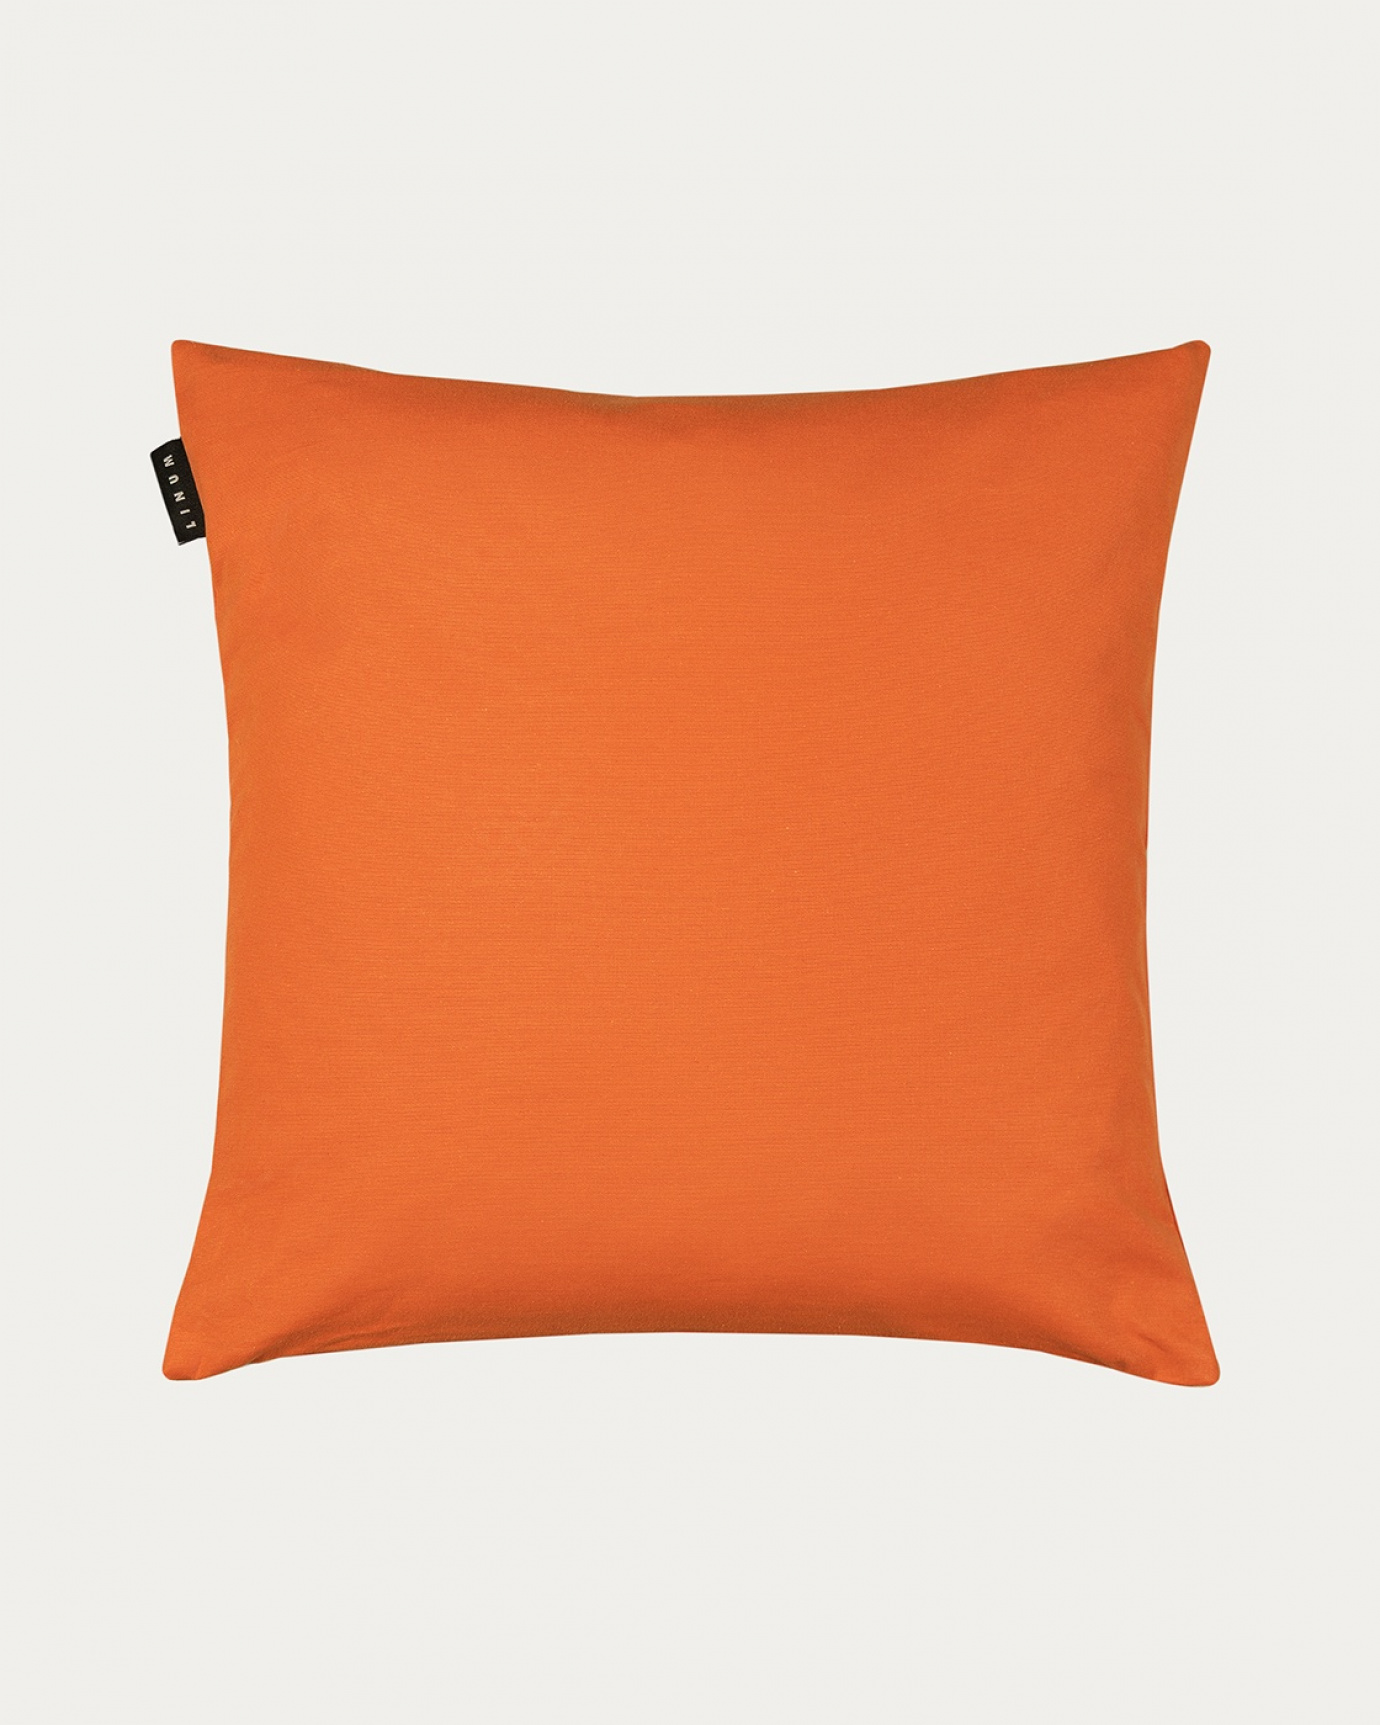 Produktbild orange ANNABELL kuddfodral av mjuk bomull från LINUM DESIGN. Storlek 50x50 cm.